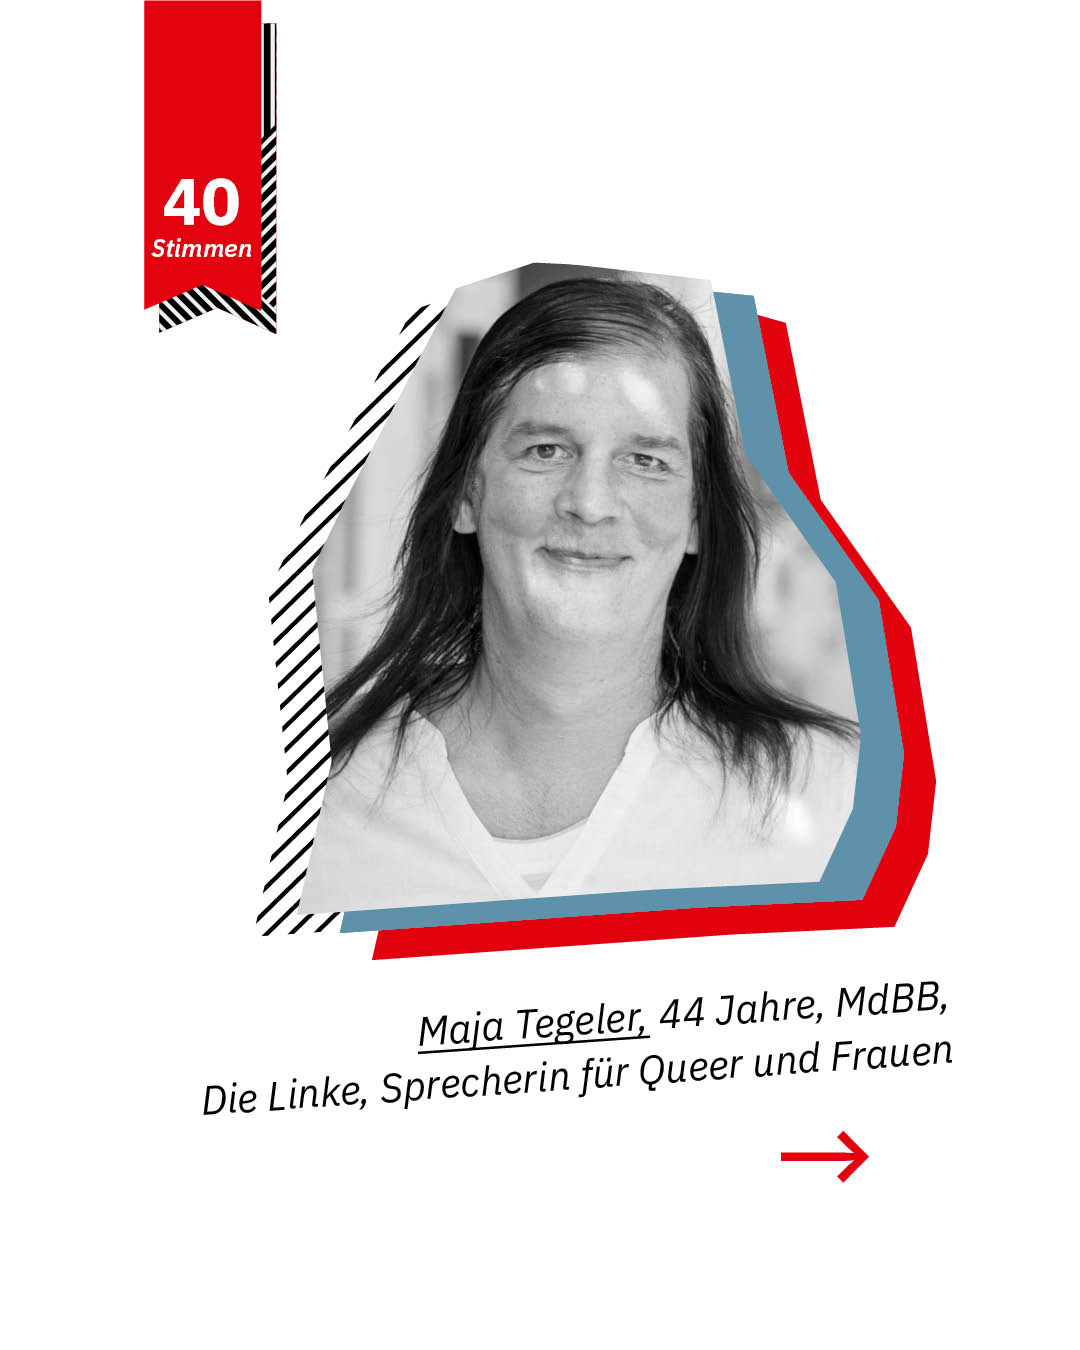 Statement 40 Jahre Gleichberechtigung,Maja Tegeler, MdBB, Die Linke